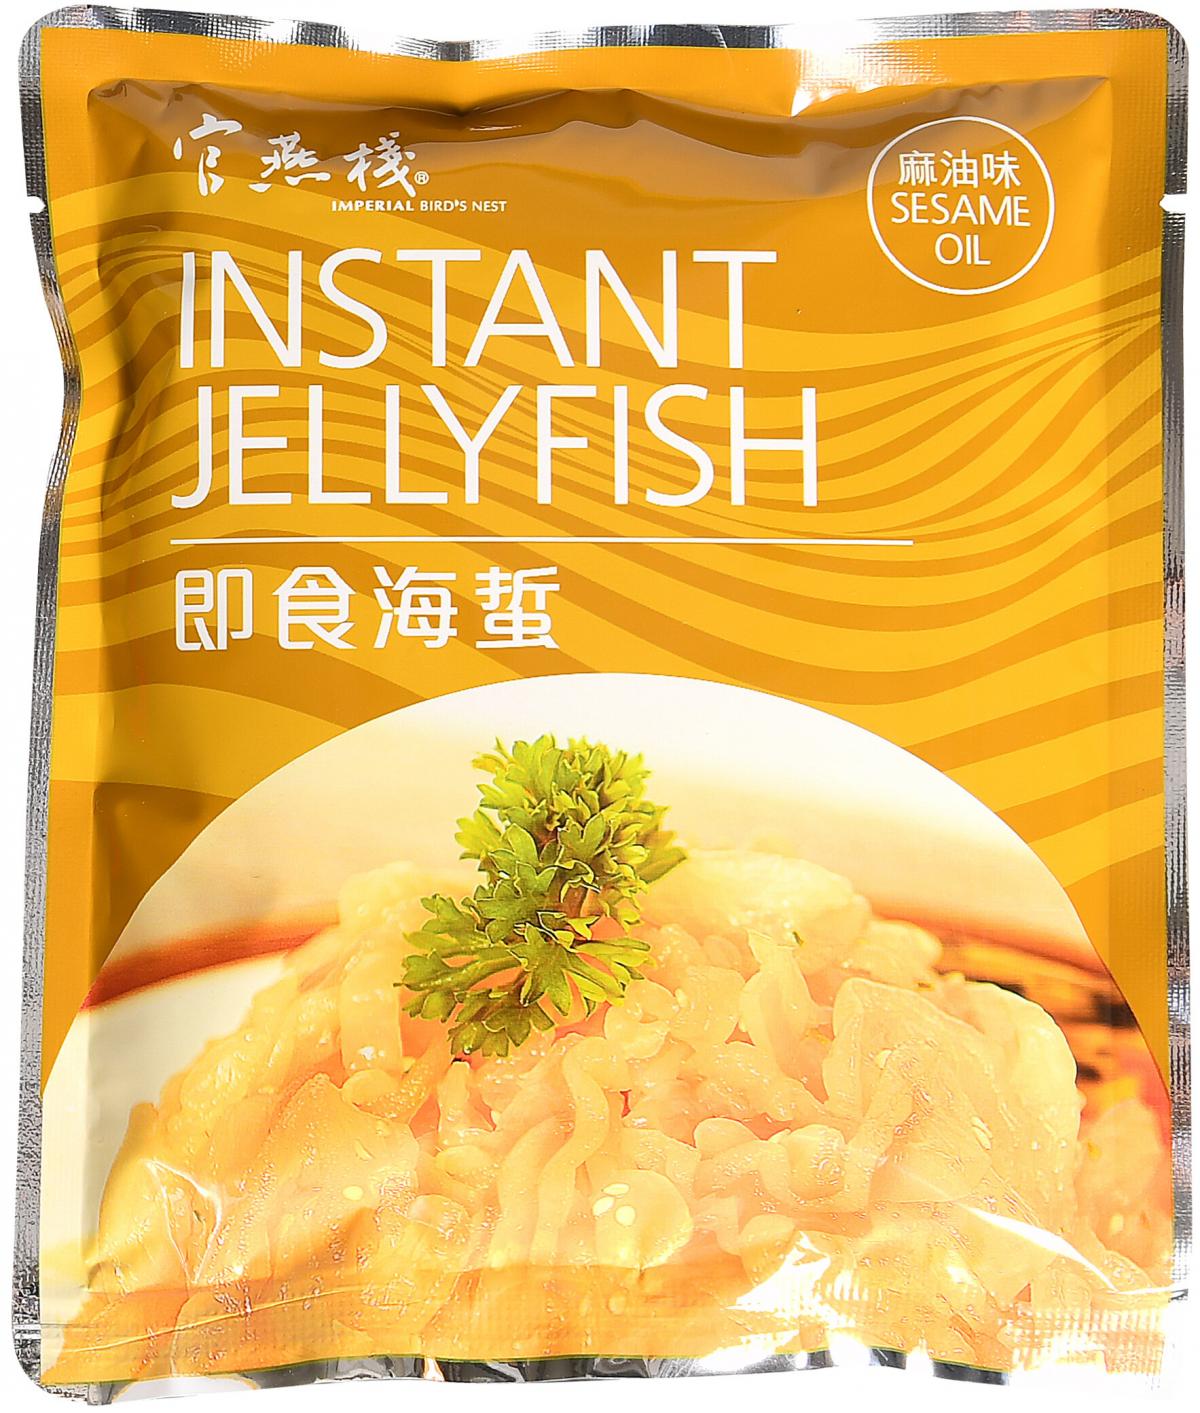 Instant Jellyfish - Sesame Oil 150g